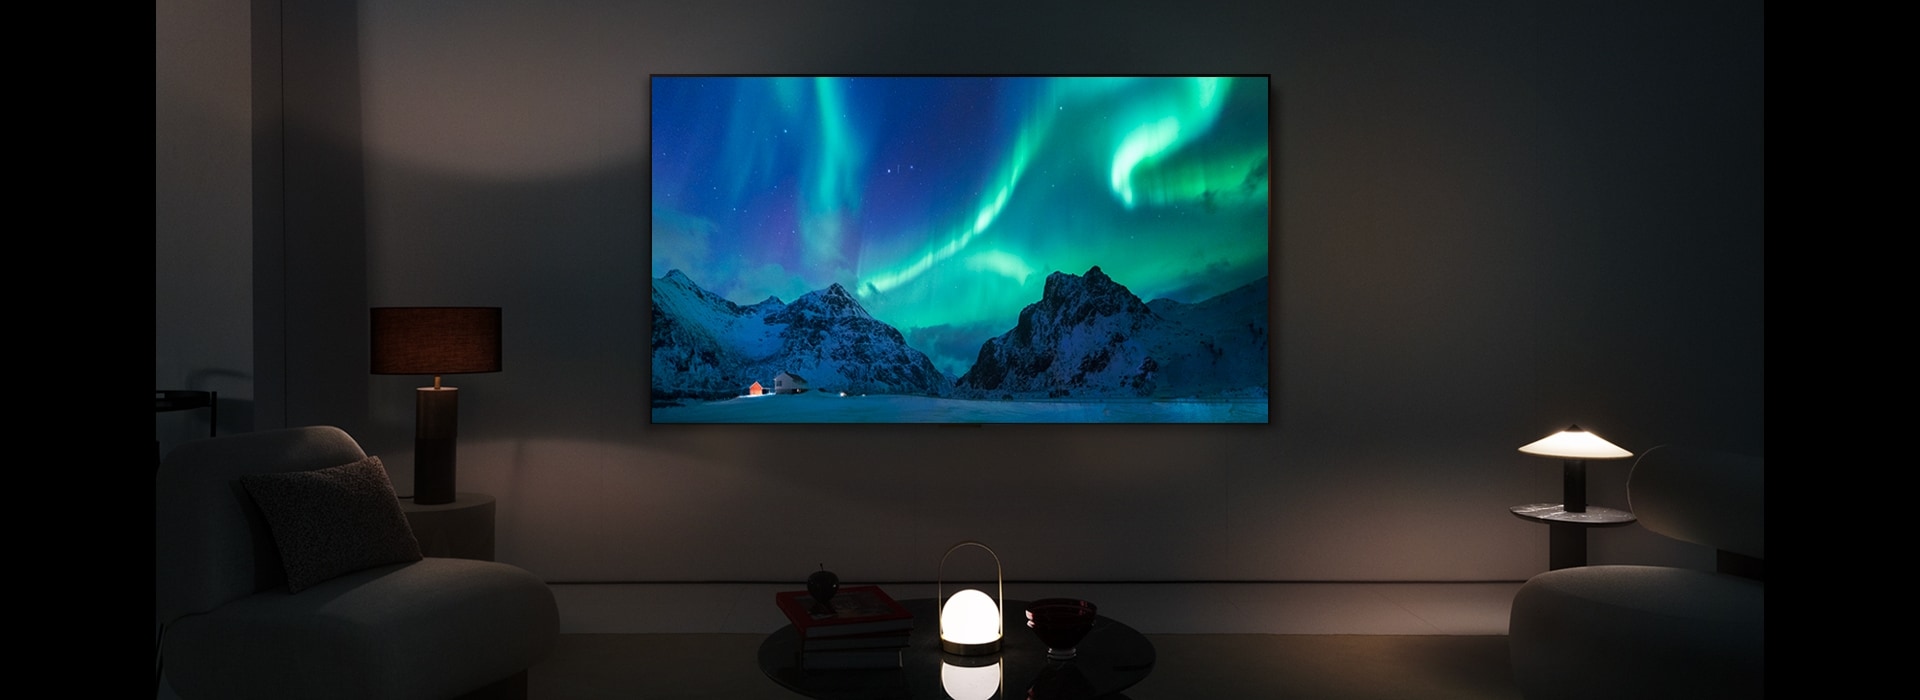 Televisor LG OLED en un espacio moderno durante la noche. La imagen en pantalla de la aurora boreal se muestra con los niveles de brillo ideales.